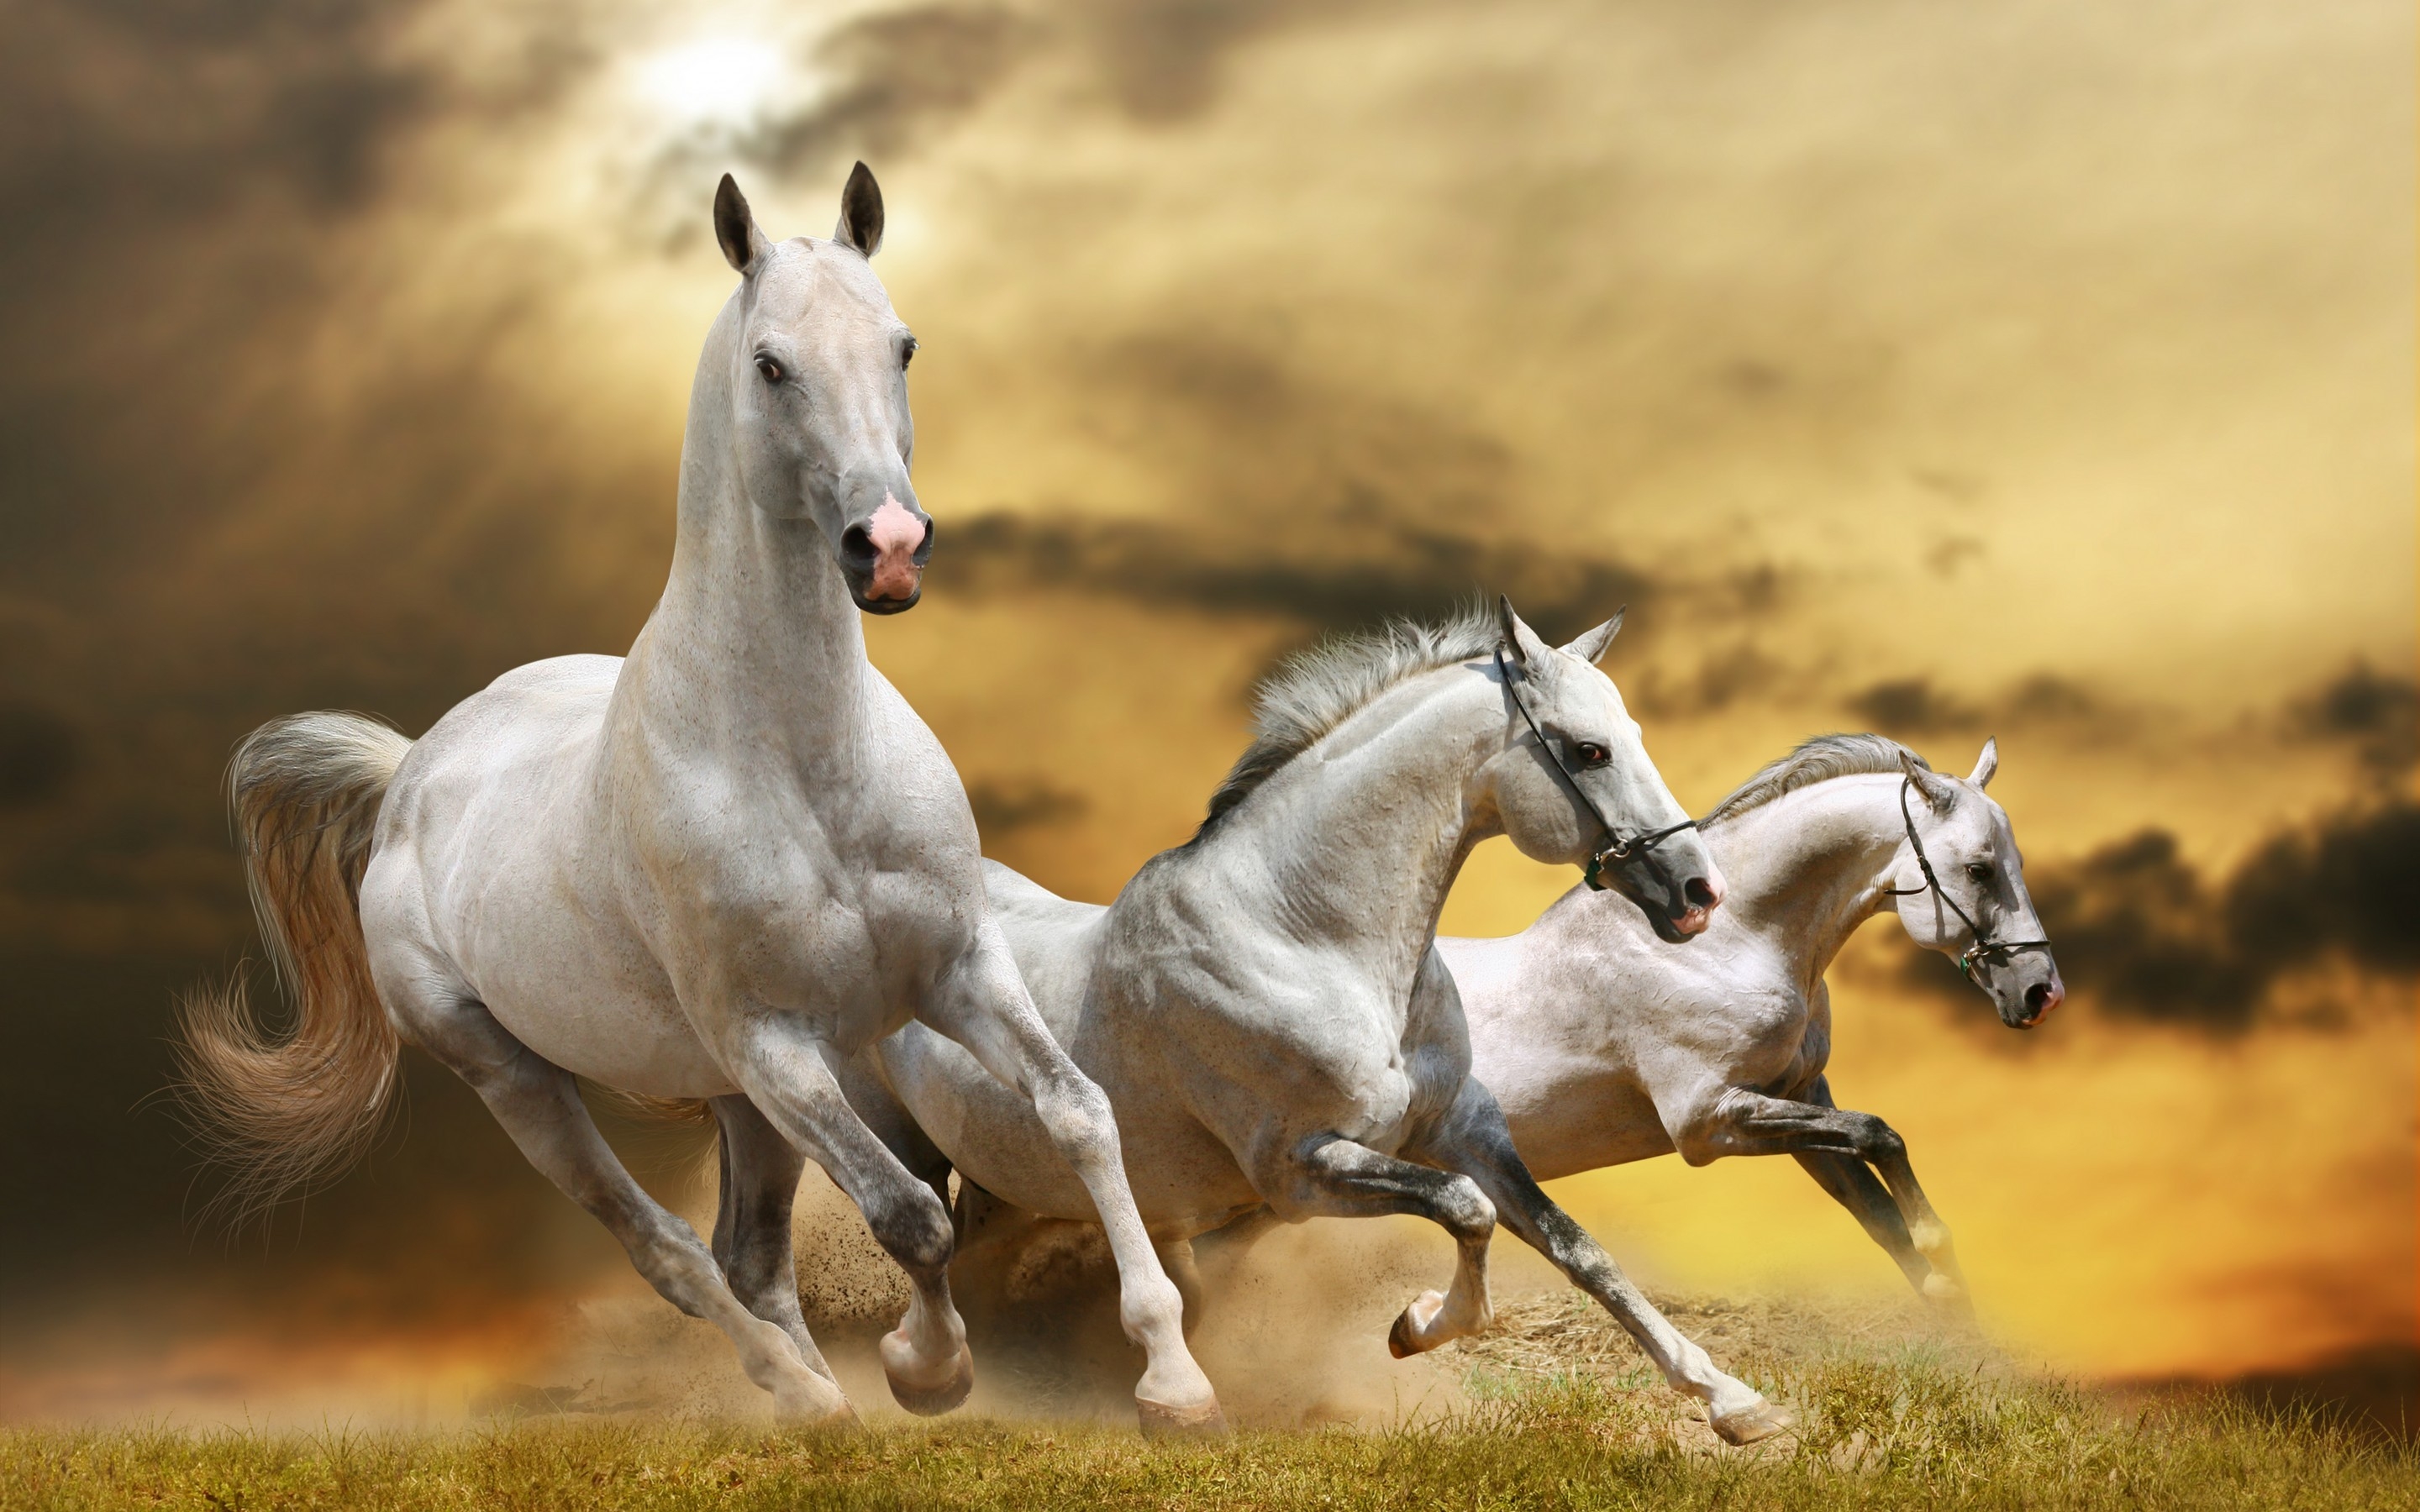 Wilde White Horses Wallpaper - Running White Horse , HD Wallpaper & Backgrounds